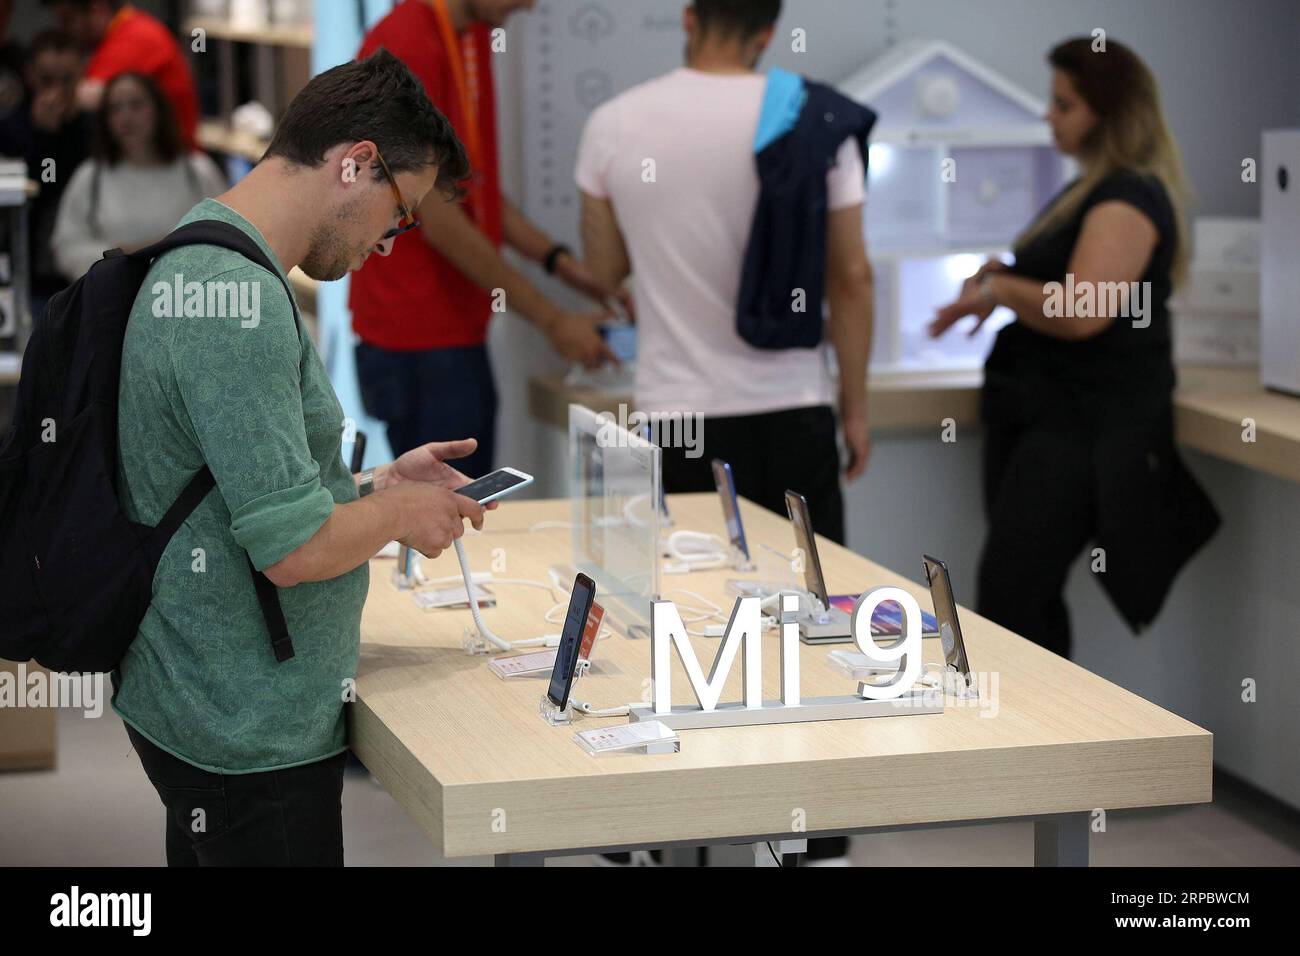 (190616) -- PORTO (PORTOGALLO), 16 giugno 2019 -- i clienti provano i prodotti Xiaomi in un negozio mi di recente apertura a Porto, Portogallo, il 15 giugno 2019. La società tecnologica cinese Xiaomi ha aperto il suo primo negozio mi ufficiale a Porto il 1° giugno). PORTUGAL-PORTO-XIAOMI-mi STORE PetroxFiuza PUBLICATIONxNOTxINxCHN Foto Stock